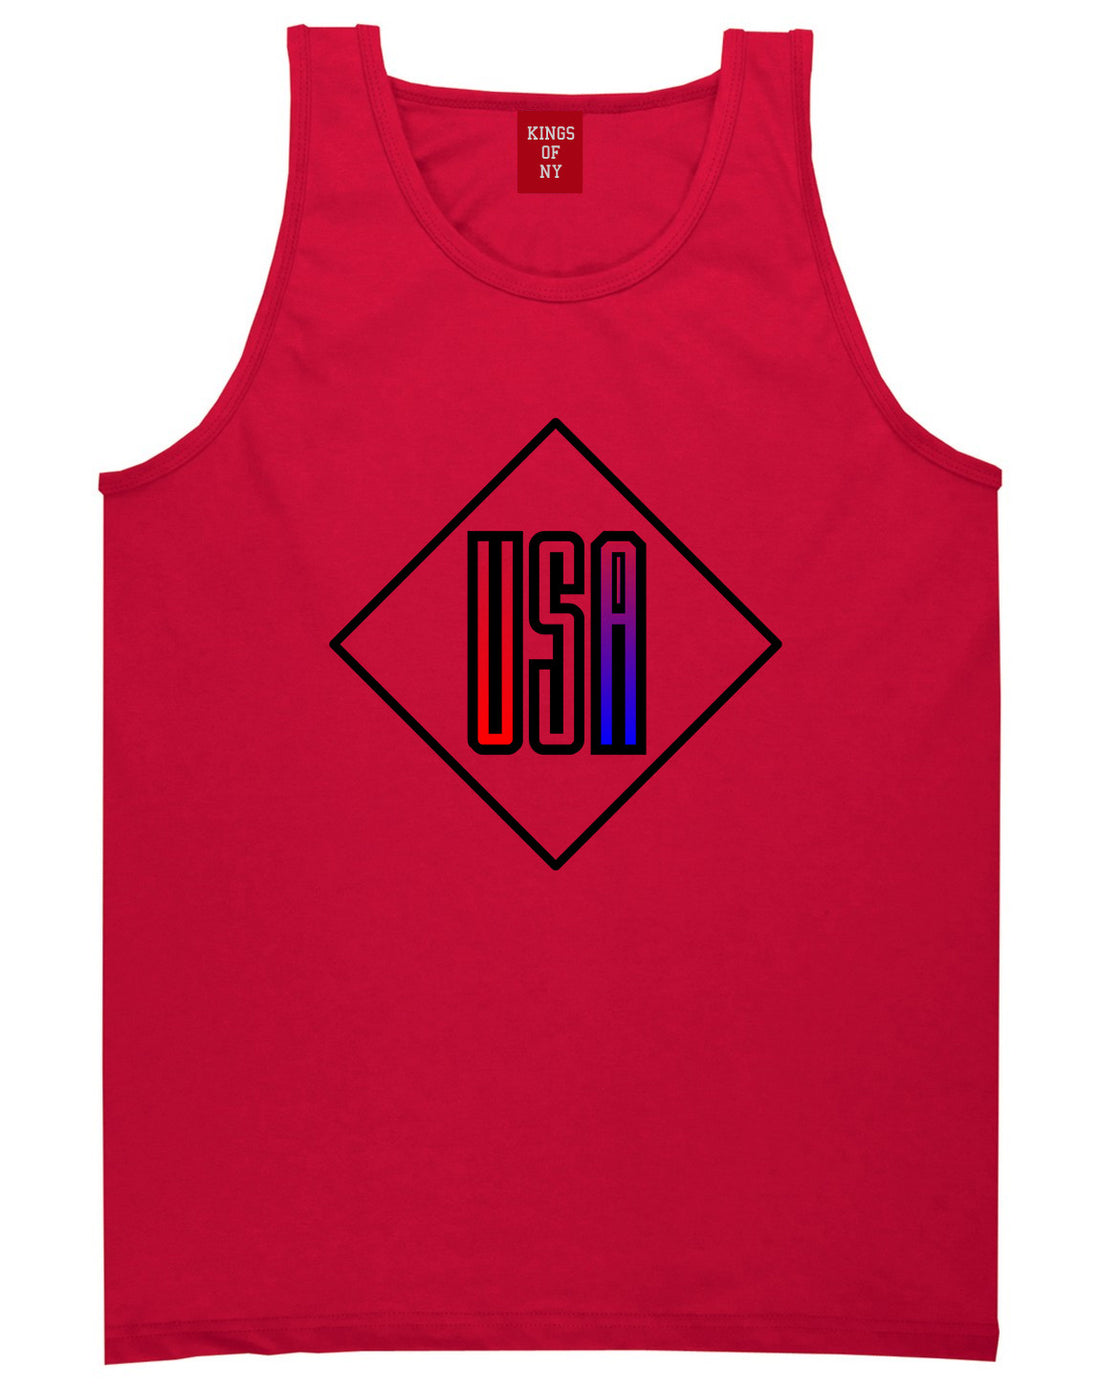 USA Diamond Logo Tank Top in Red